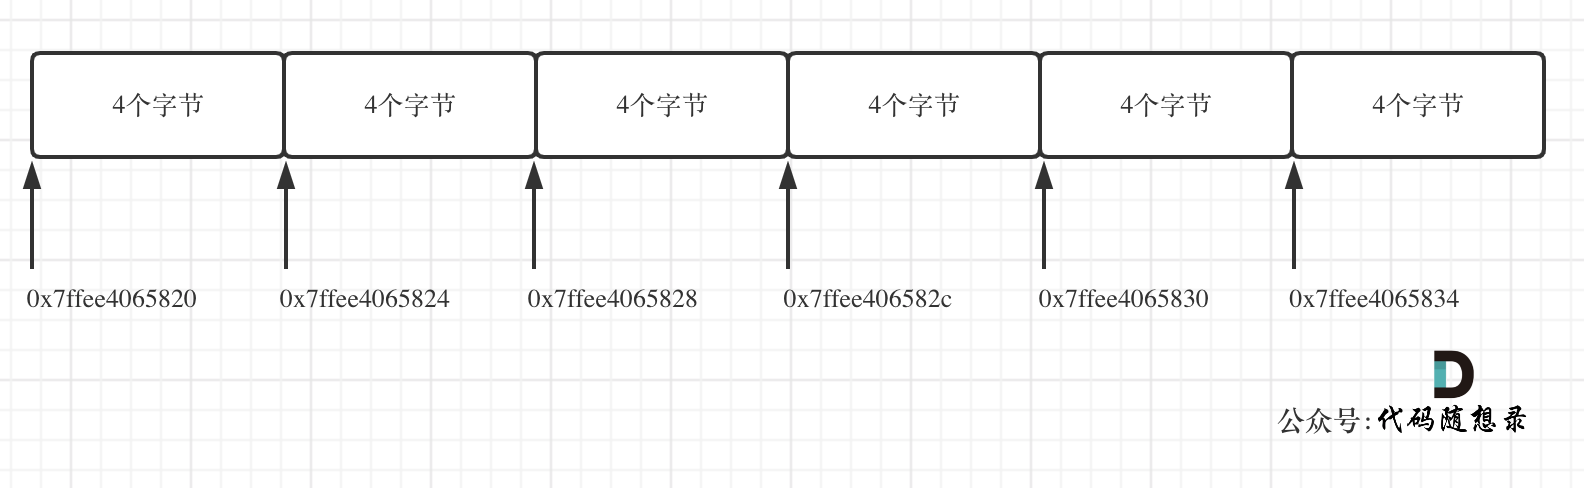 数组理论基础 - 图4